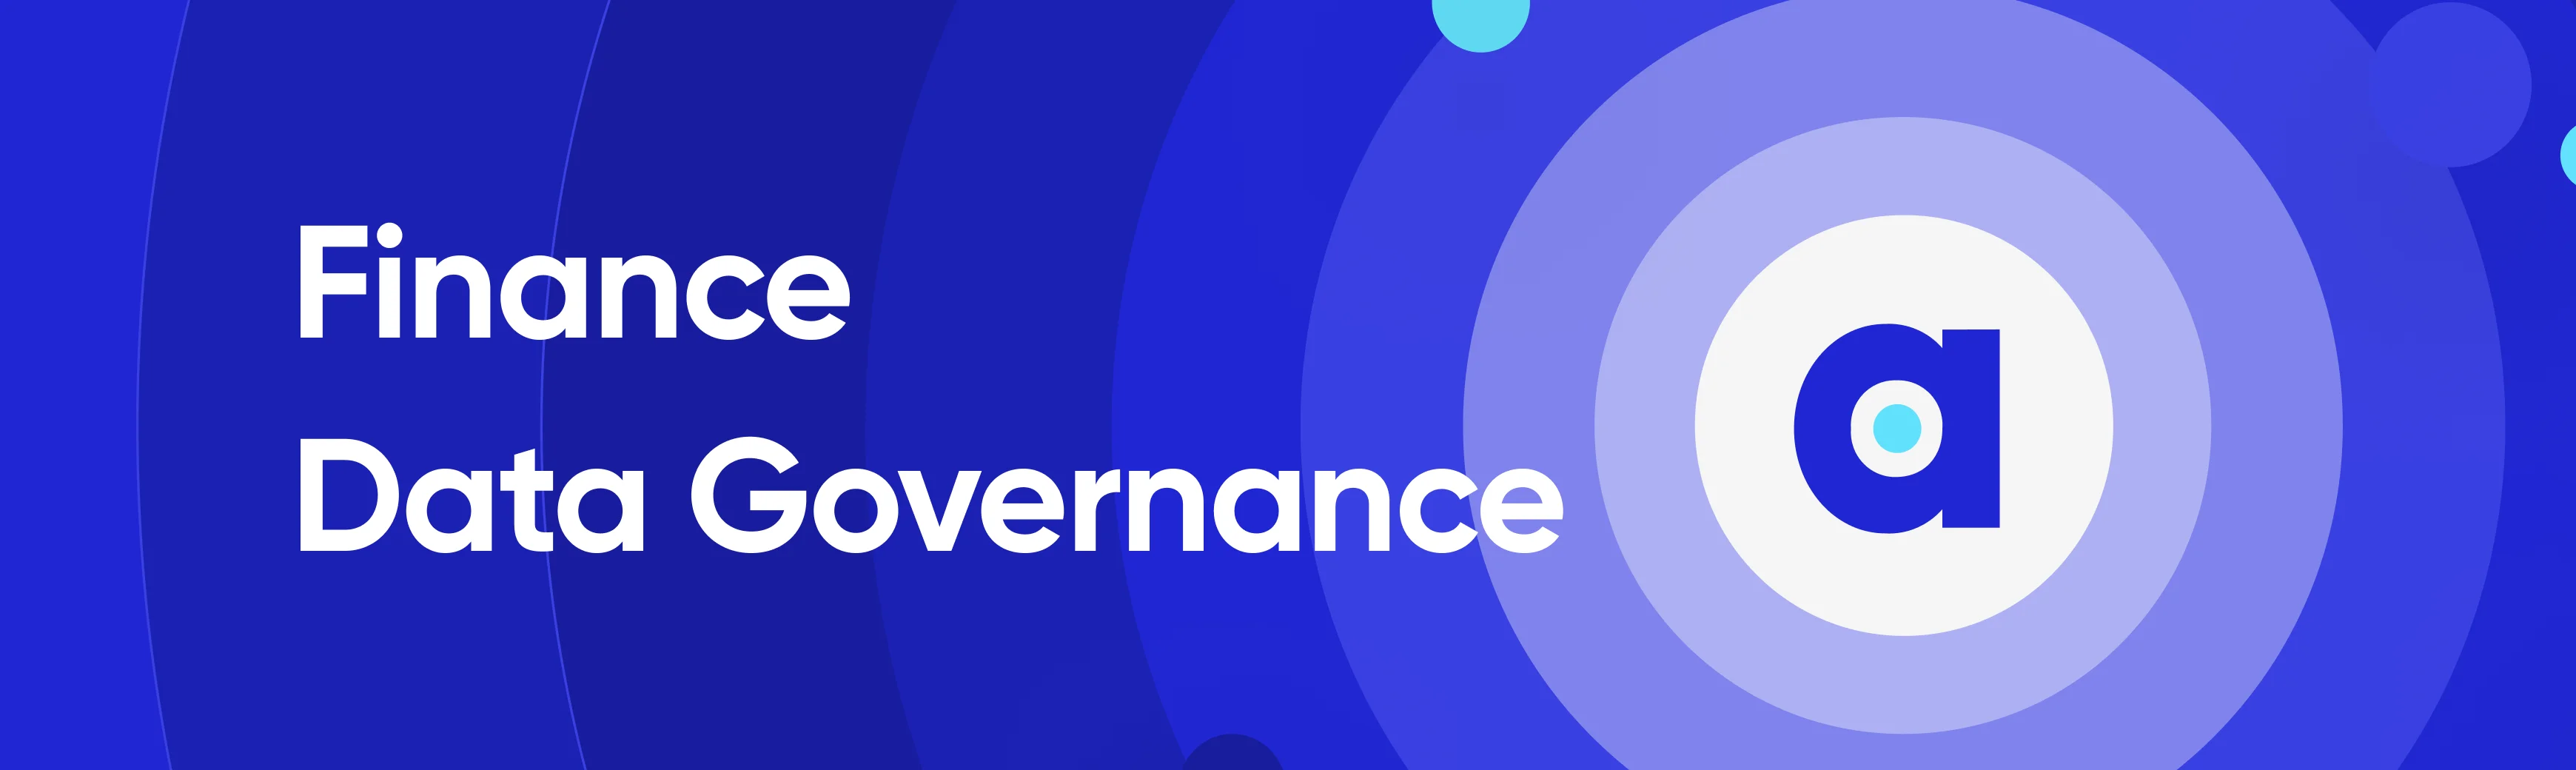 Finance Data Governance